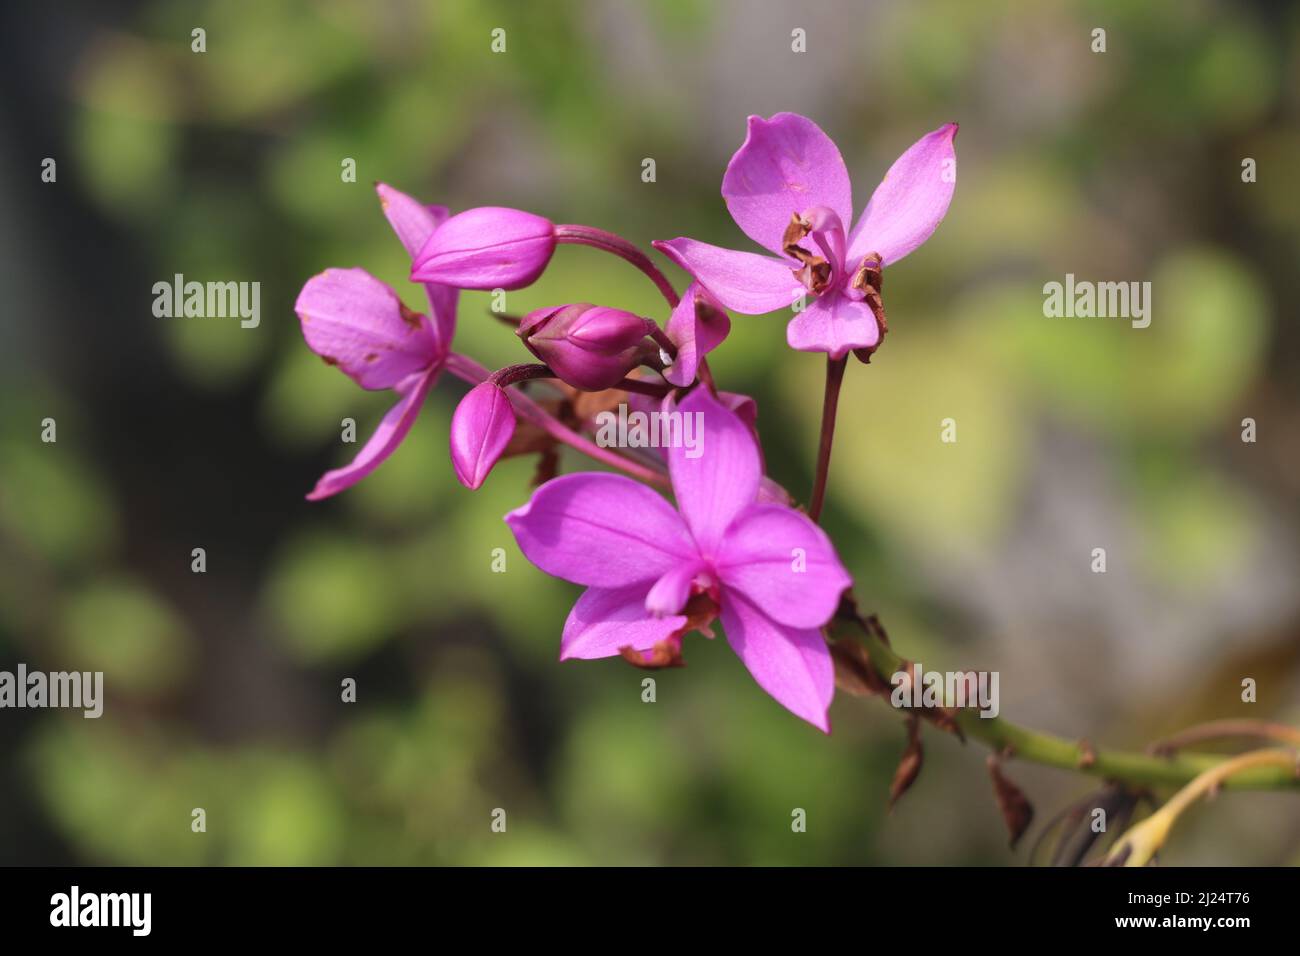 Spathoglottis plicata, allgemein bekannt als die philippinische Grundorchidee, oder große violette Orchidee ist eine immergrüne, terrestrische Pflanze mit überfüllten Pseudobulben. Stockfoto